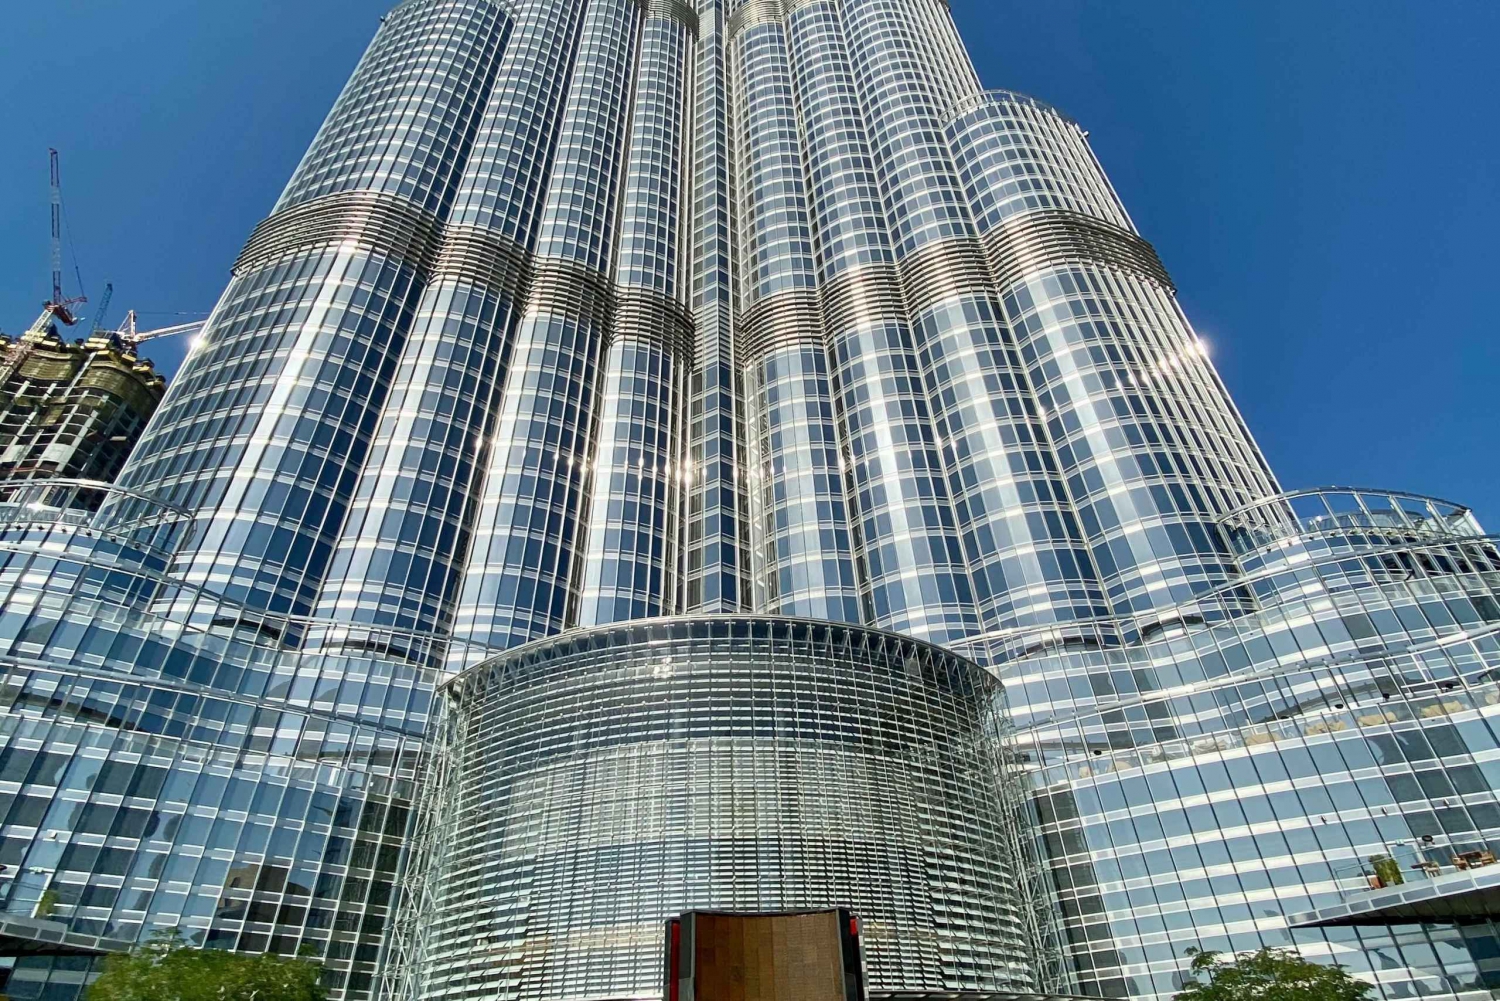 Excursão VIP particular de 1 dia pela cidade de Dubai + entrada no Burj Khalifa